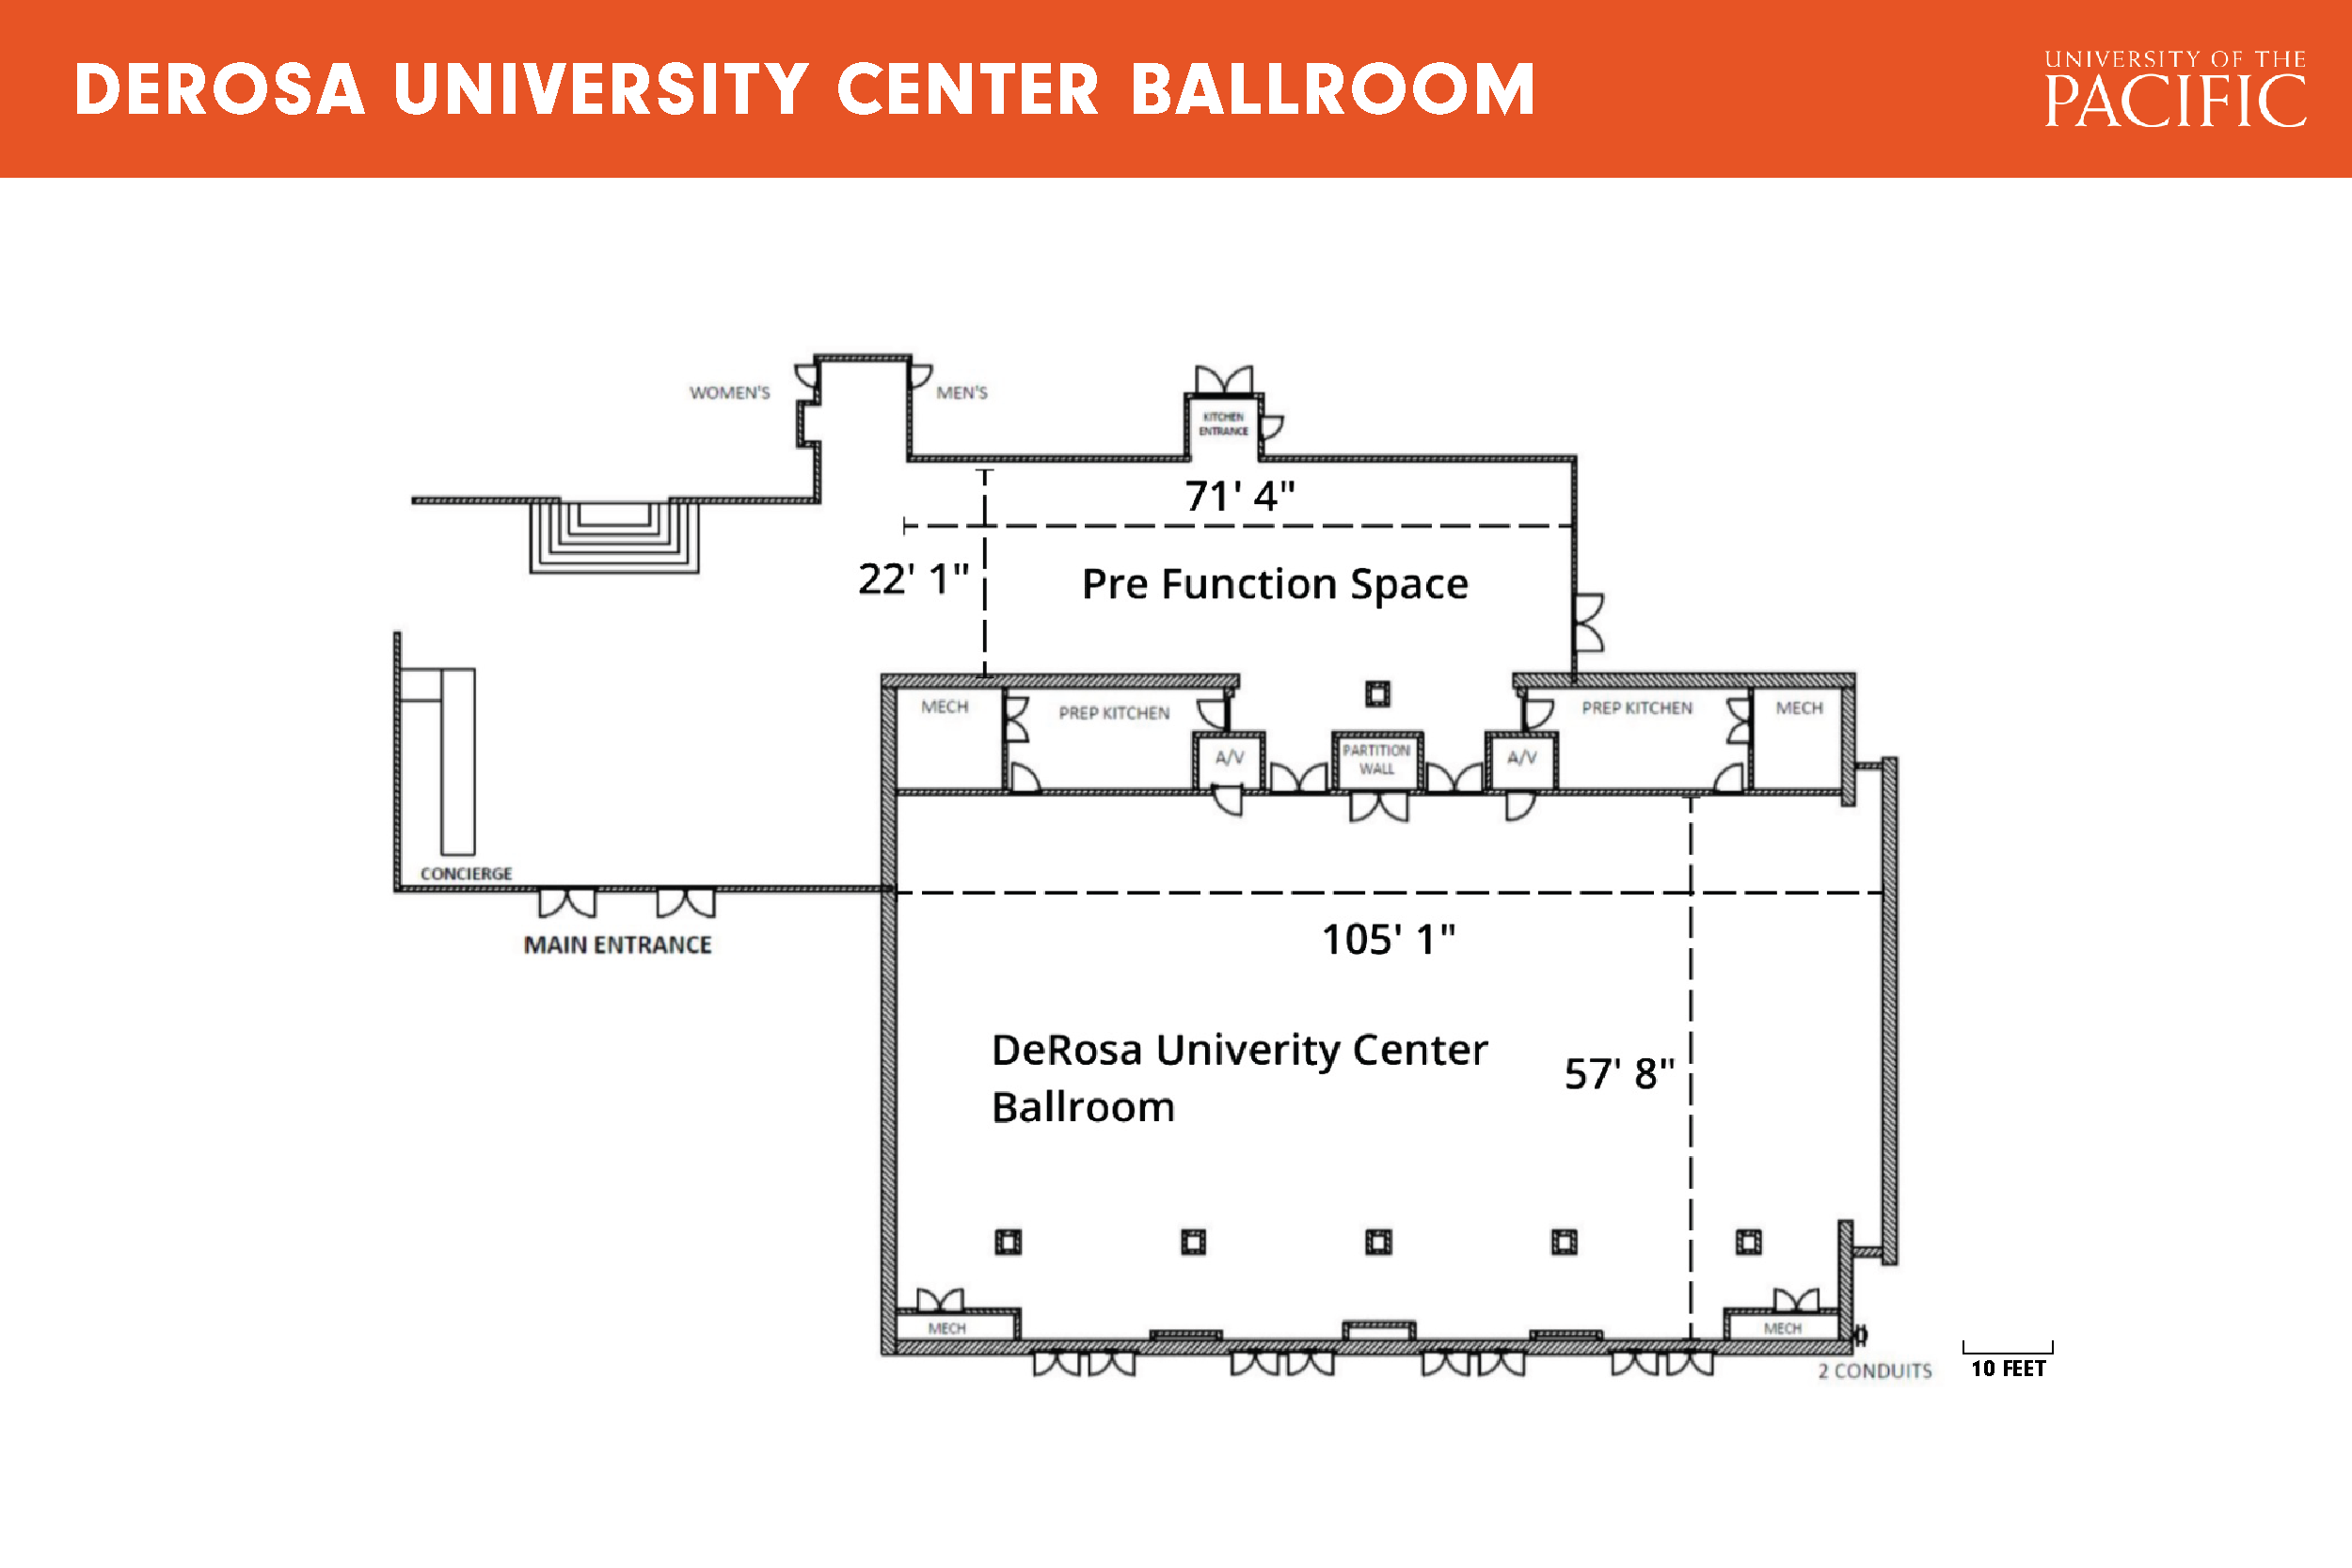 DeRosa University Center Ballroom floor plan